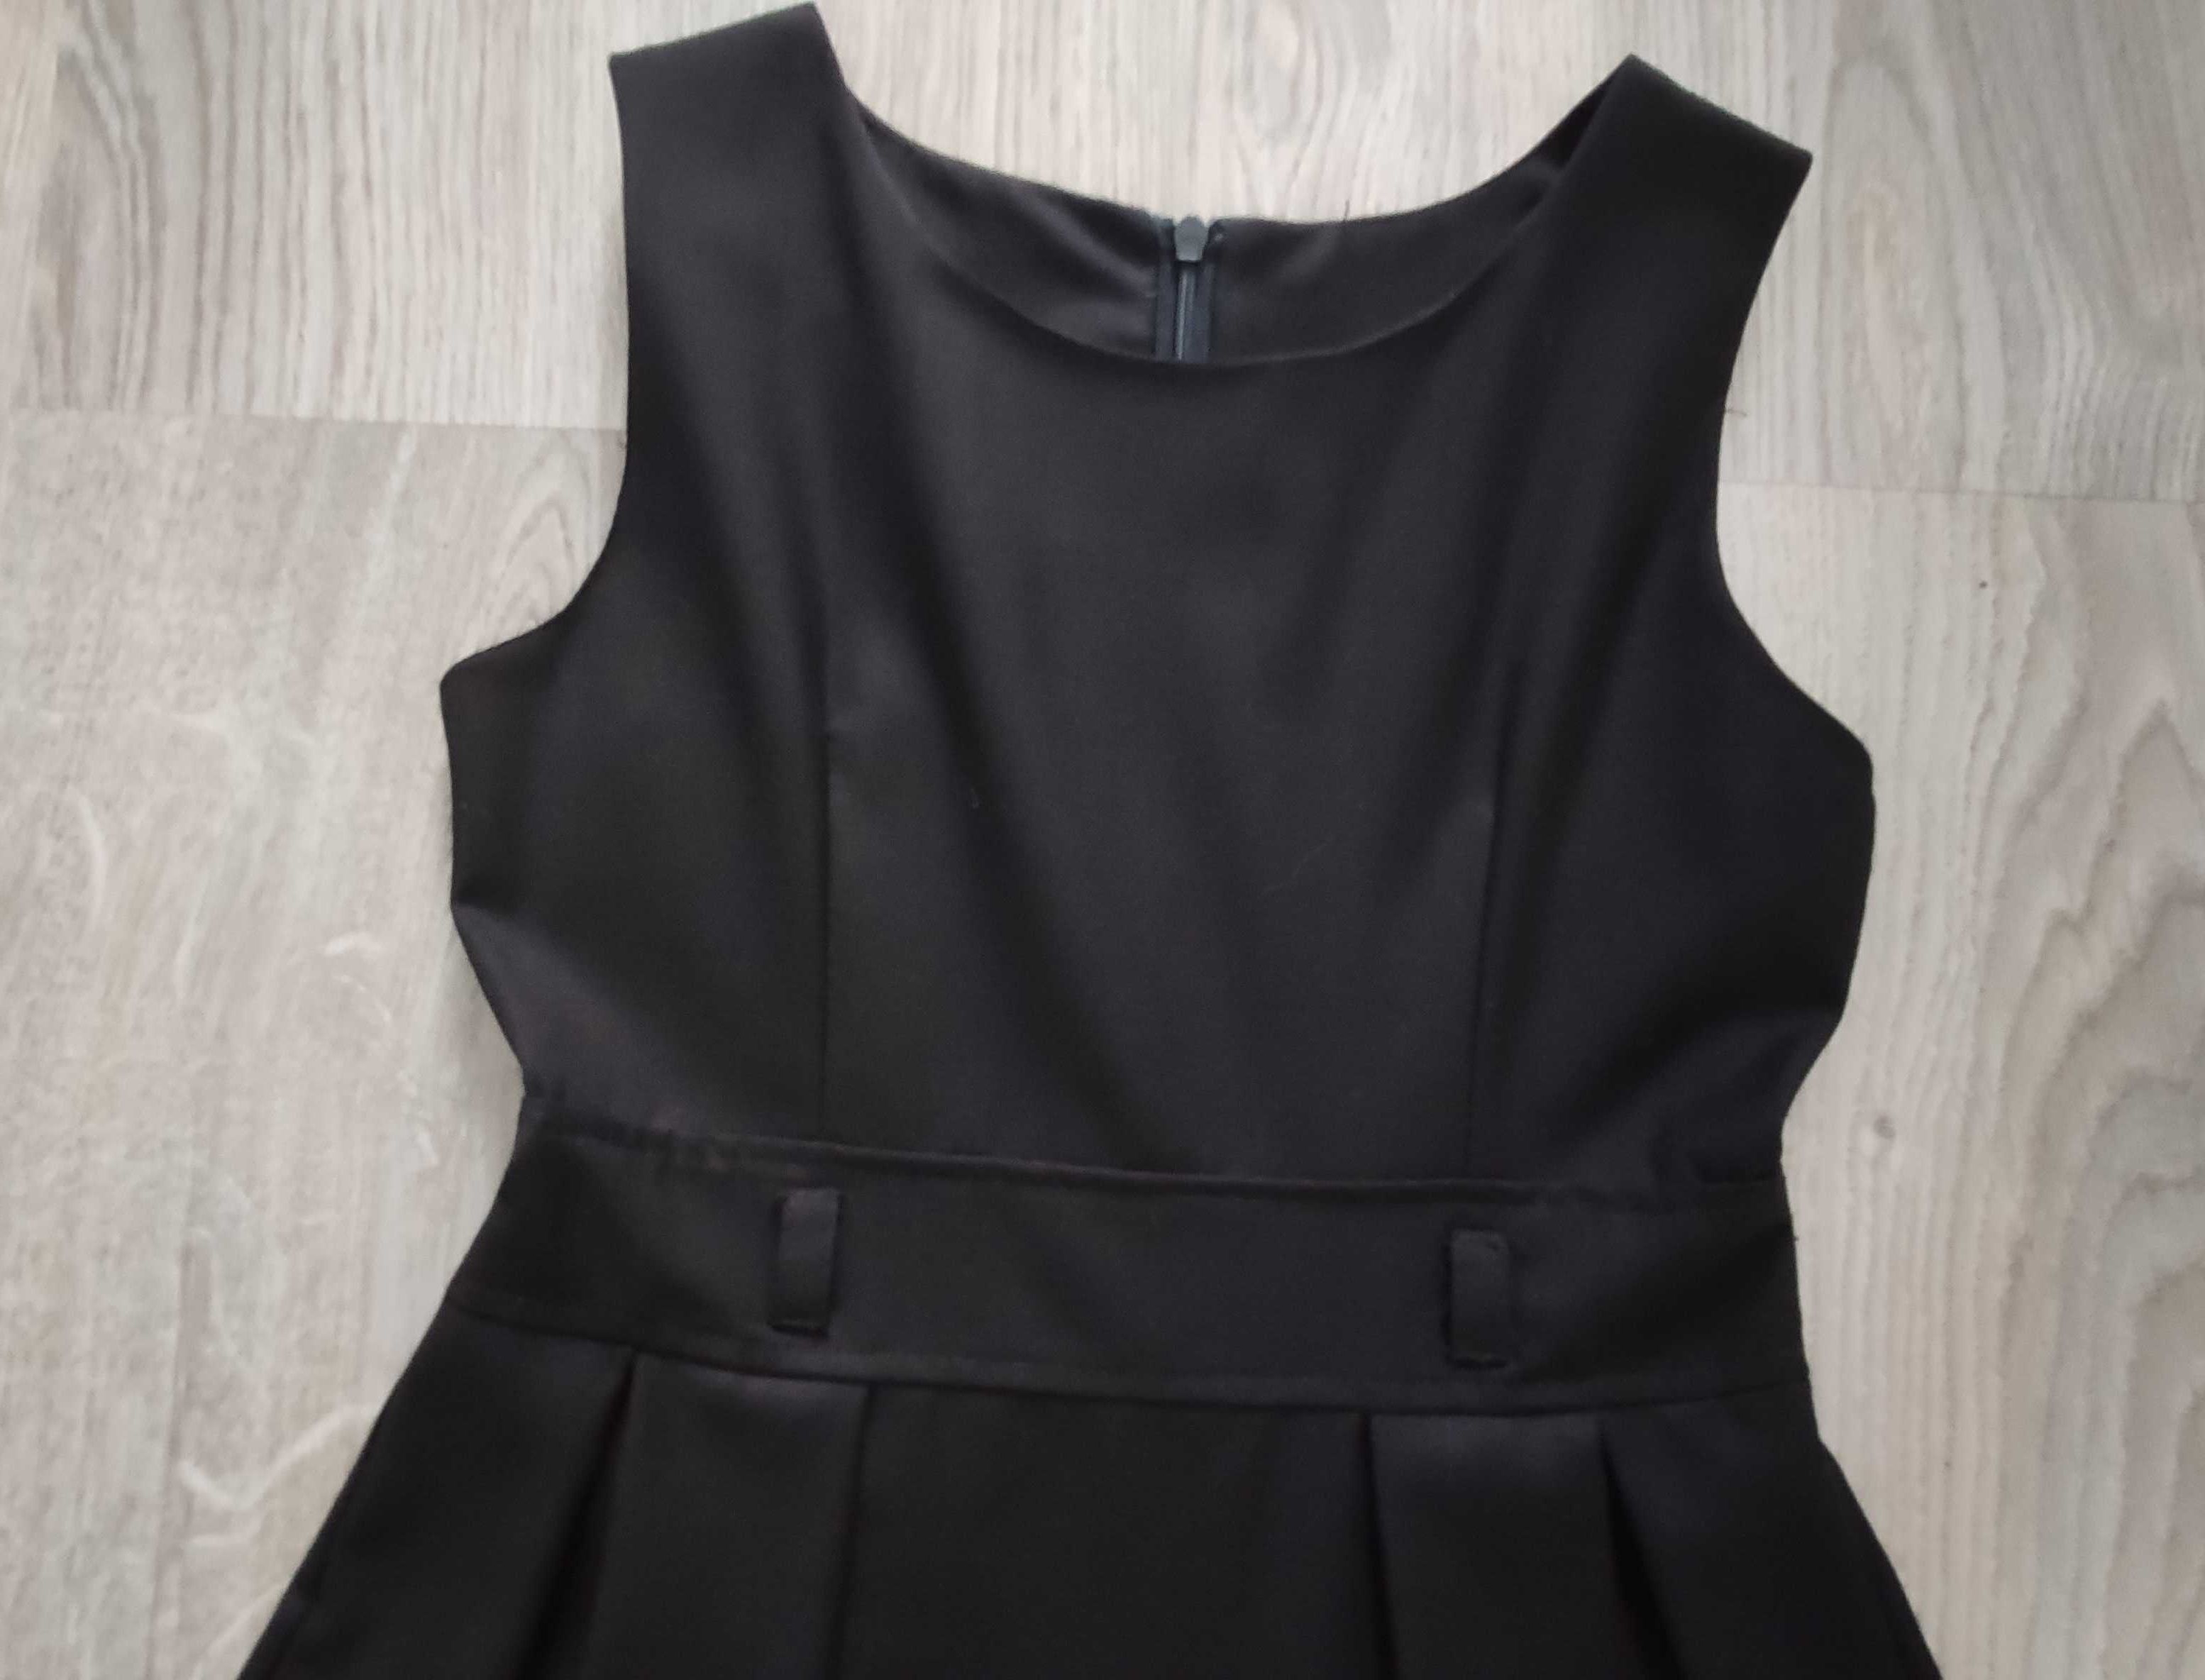 Czarna sukienka rozm. 128